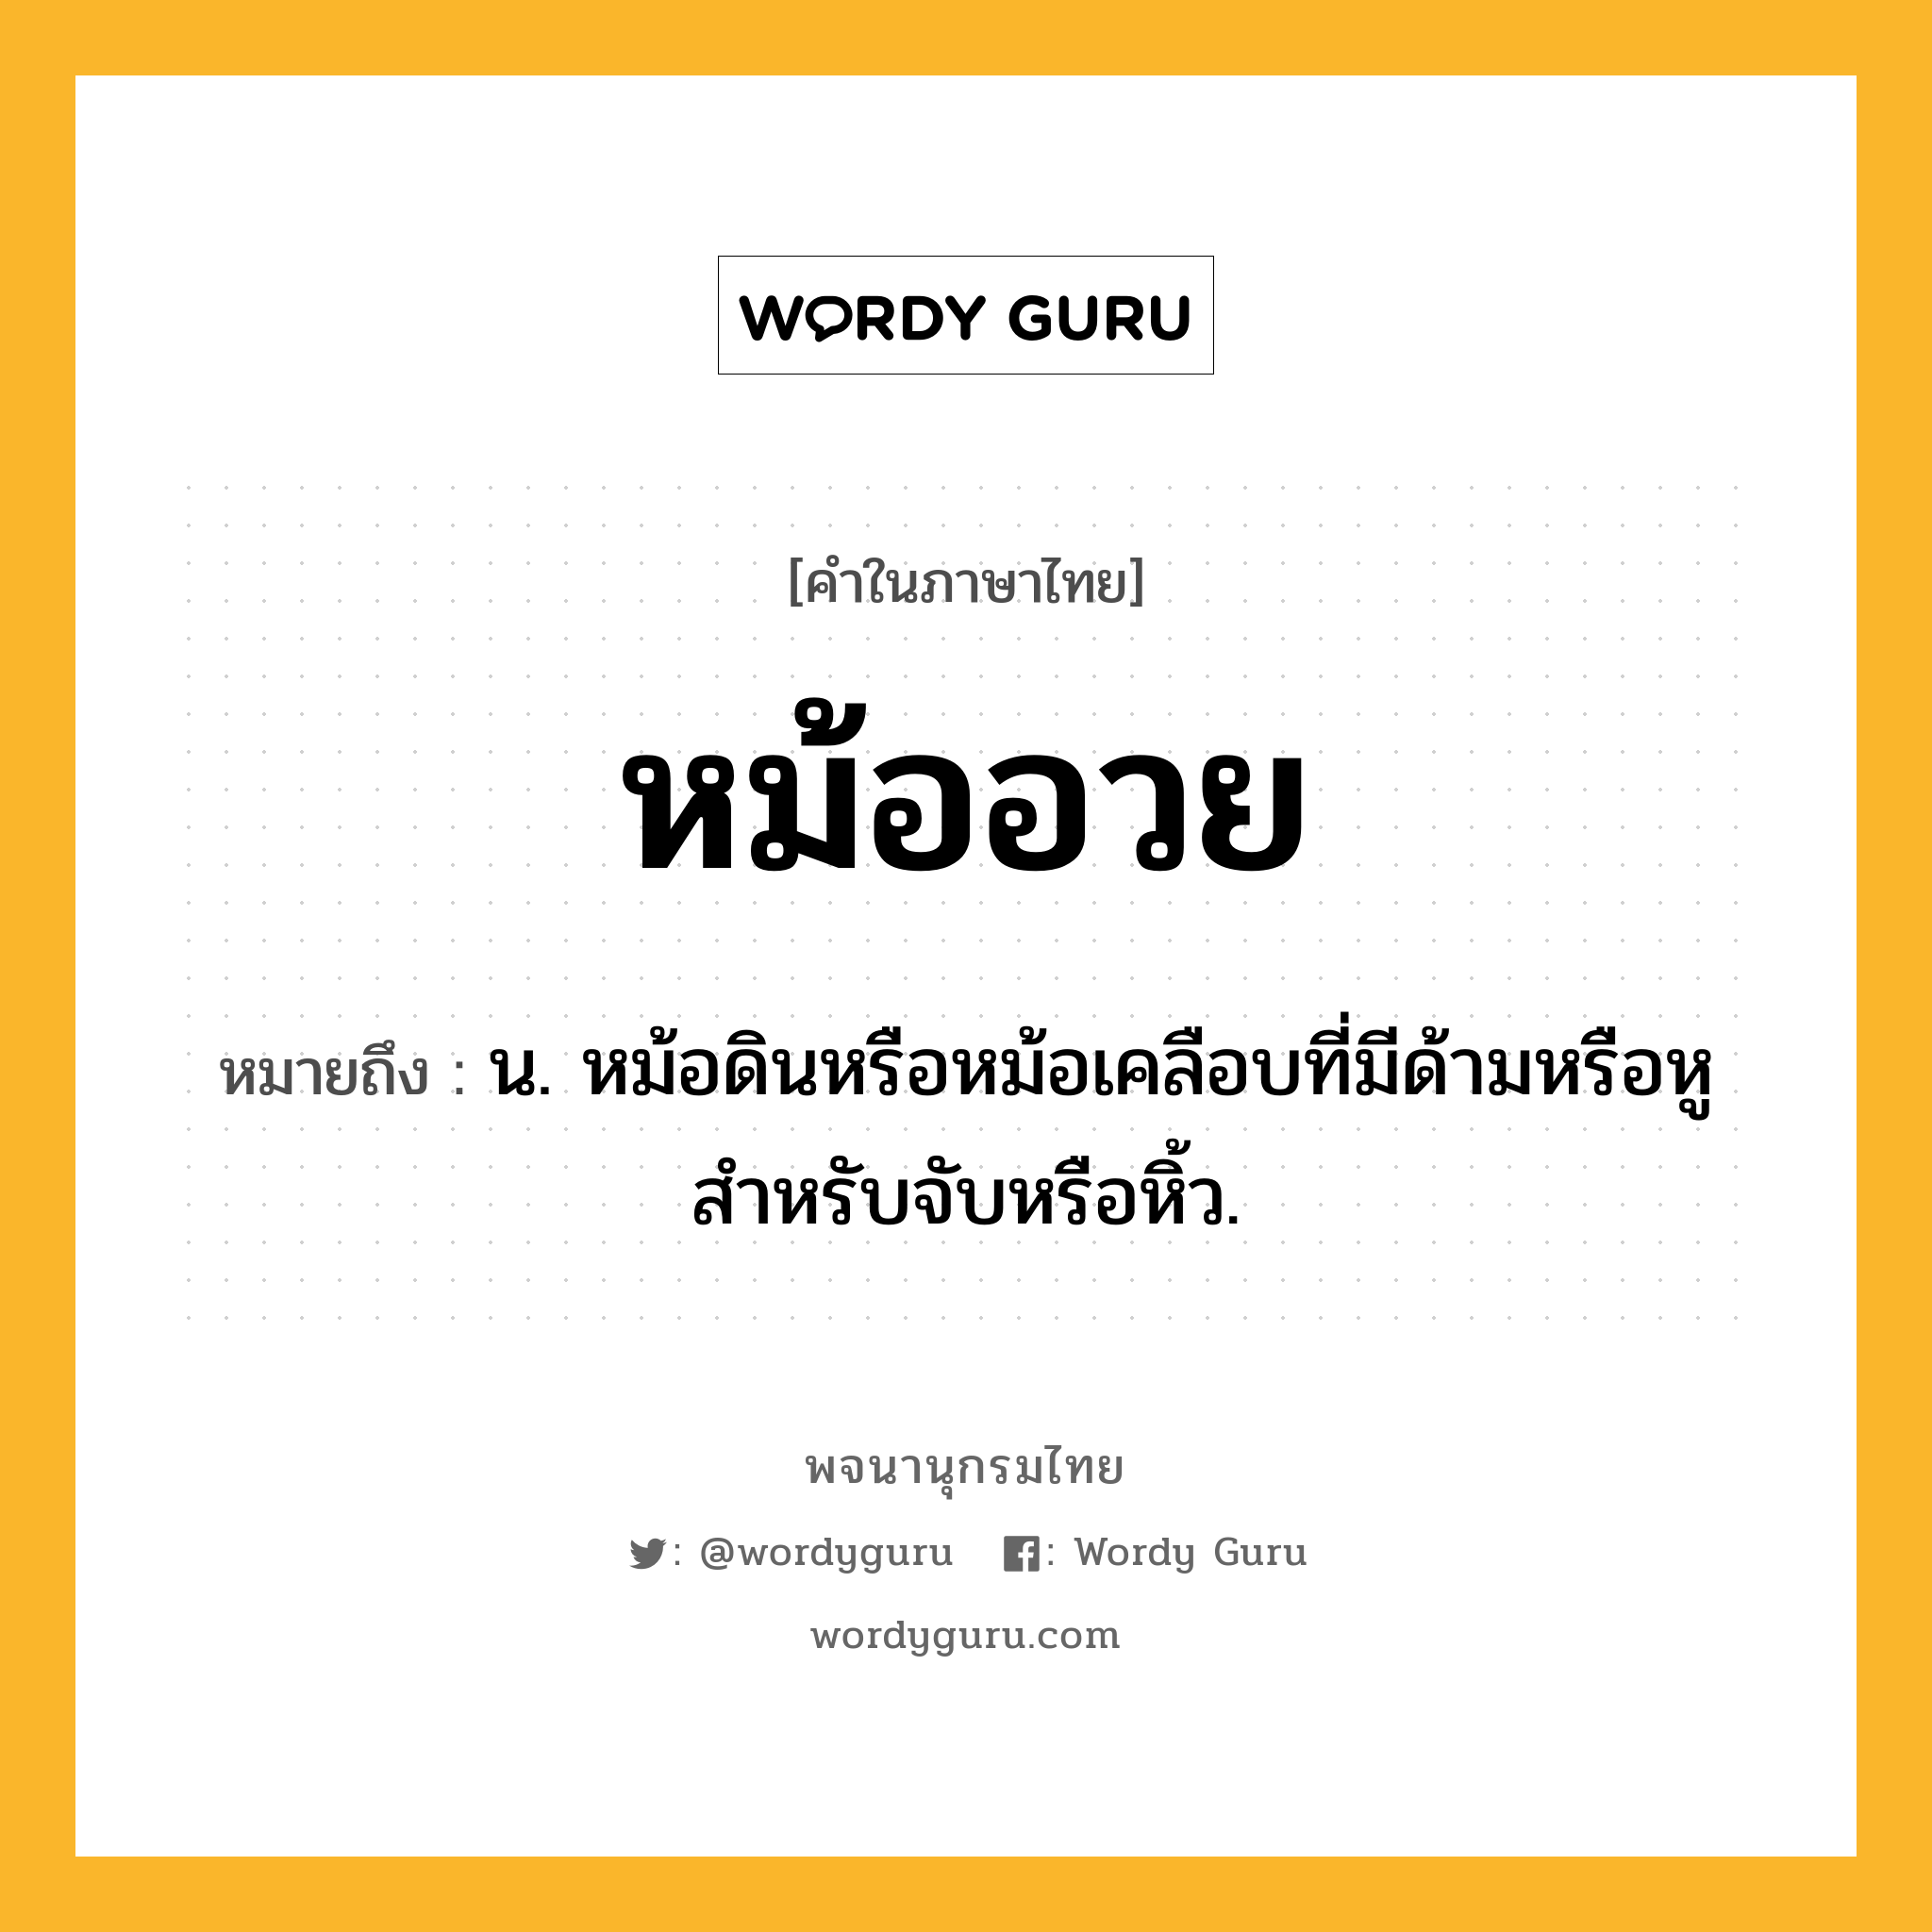 หม้ออวย ความหมาย หมายถึงอะไร?, คำในภาษาไทย หม้ออวย หมายถึง น. หม้อดินหรือหม้อเคลือบที่มีด้ามหรือหูสำหรับจับหรือหิ้ว.